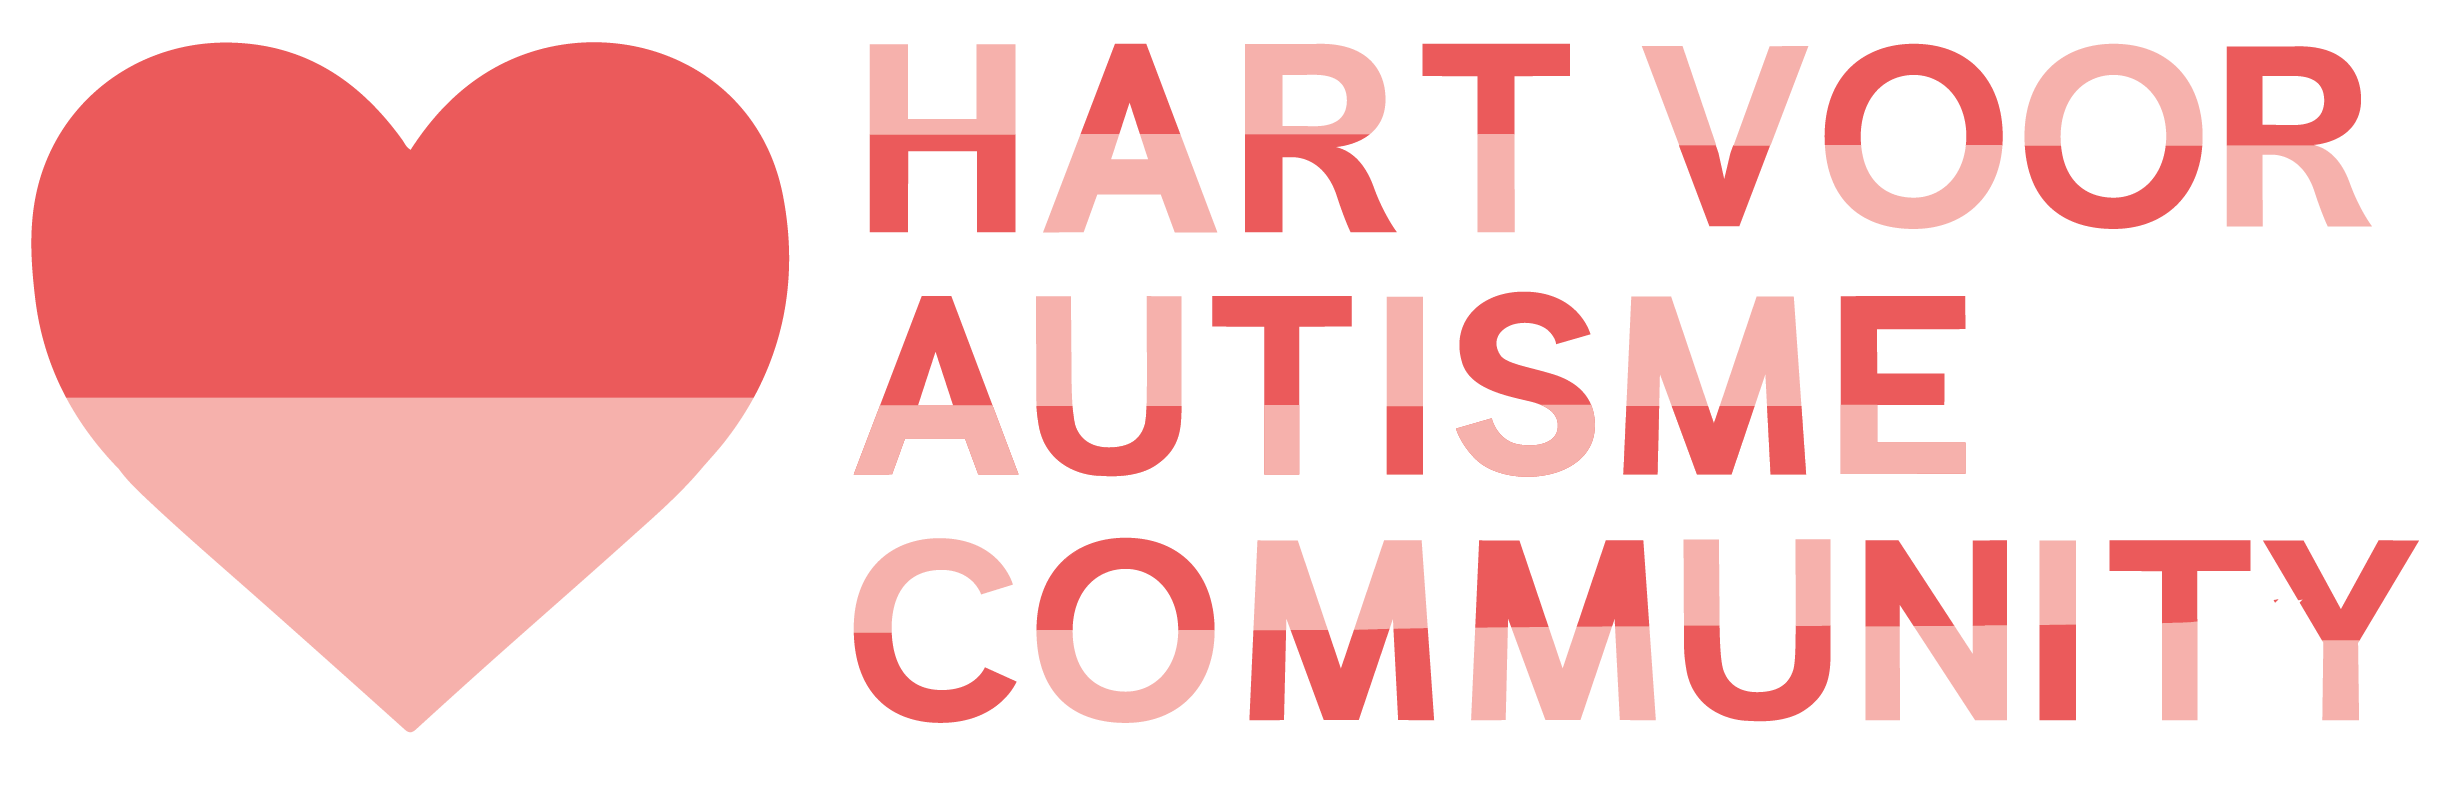 Hart voor autisme community